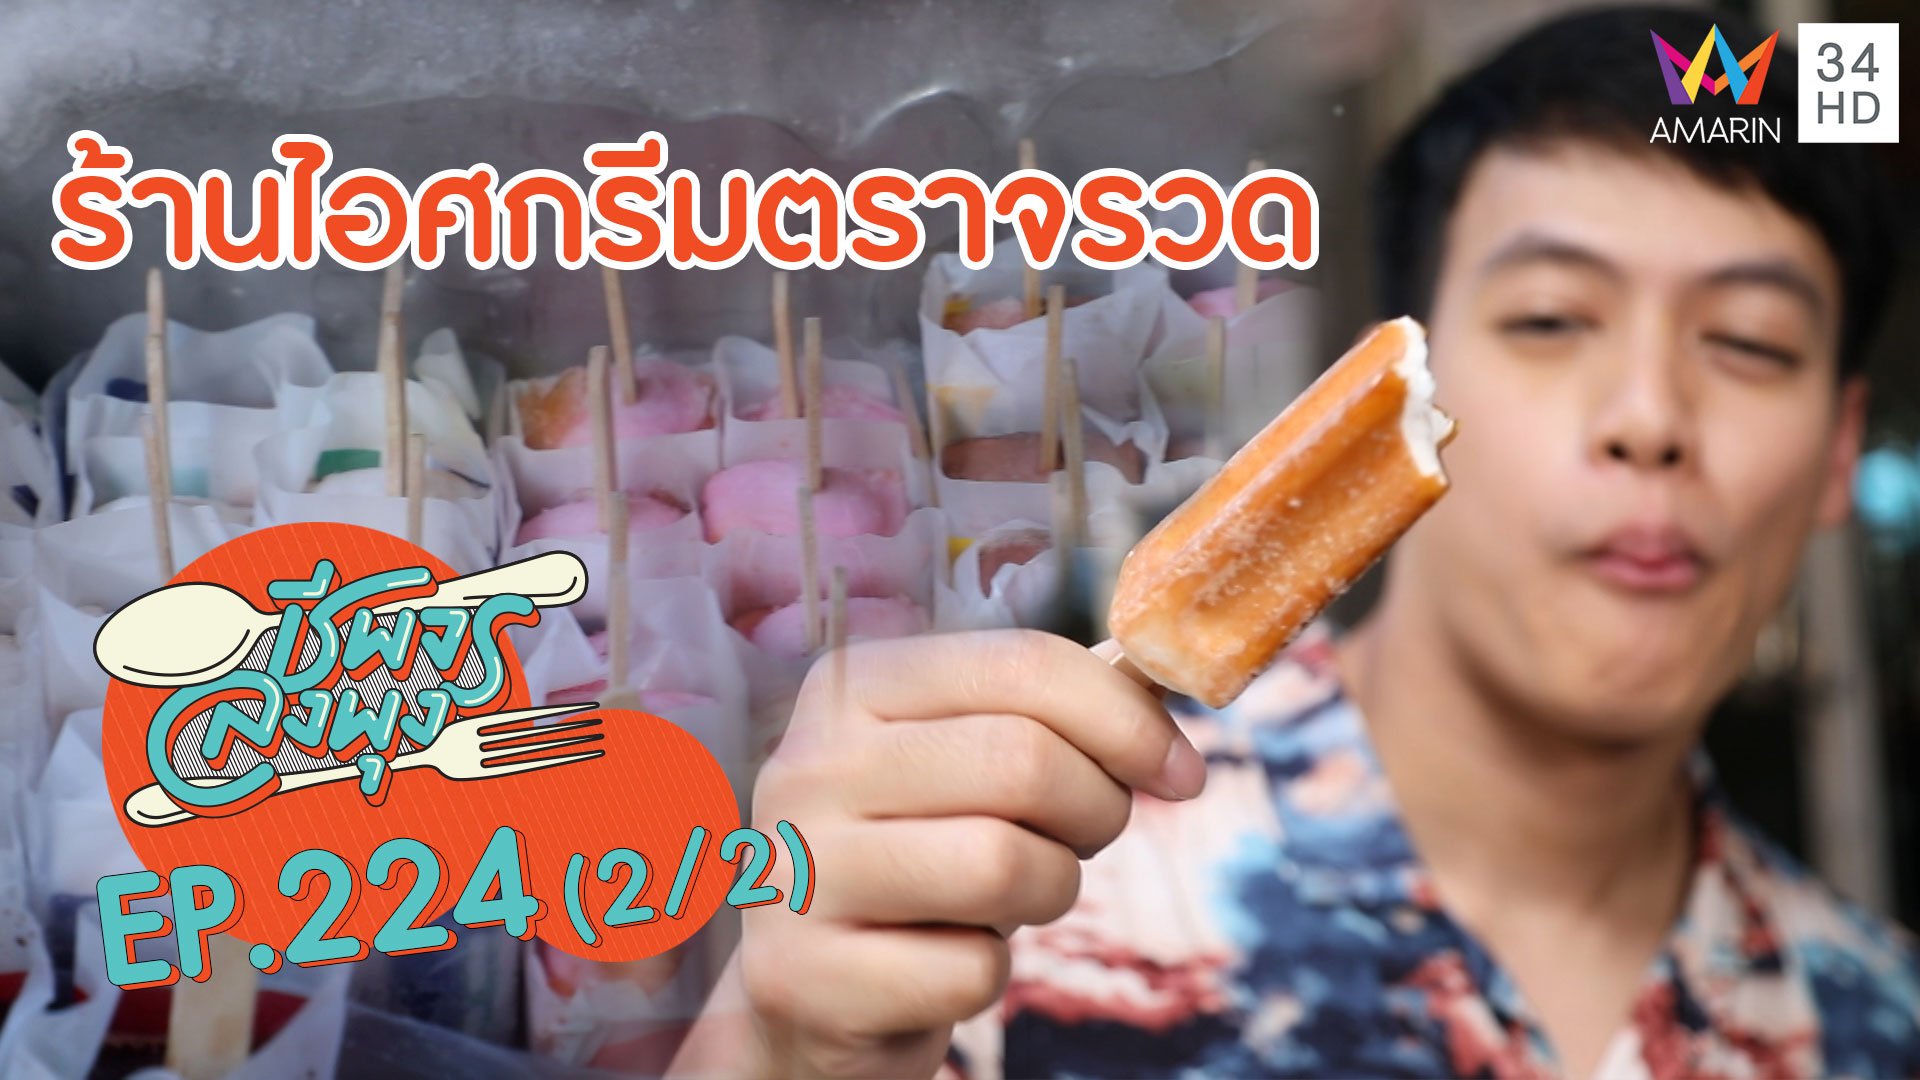 กัดคำแรกก็สดชื่น! ร้านไอศกรีมตราจรวด | ชีพจรลงพุง | 1 ส.ค. 63 (2/2) | AMARIN TVHD34